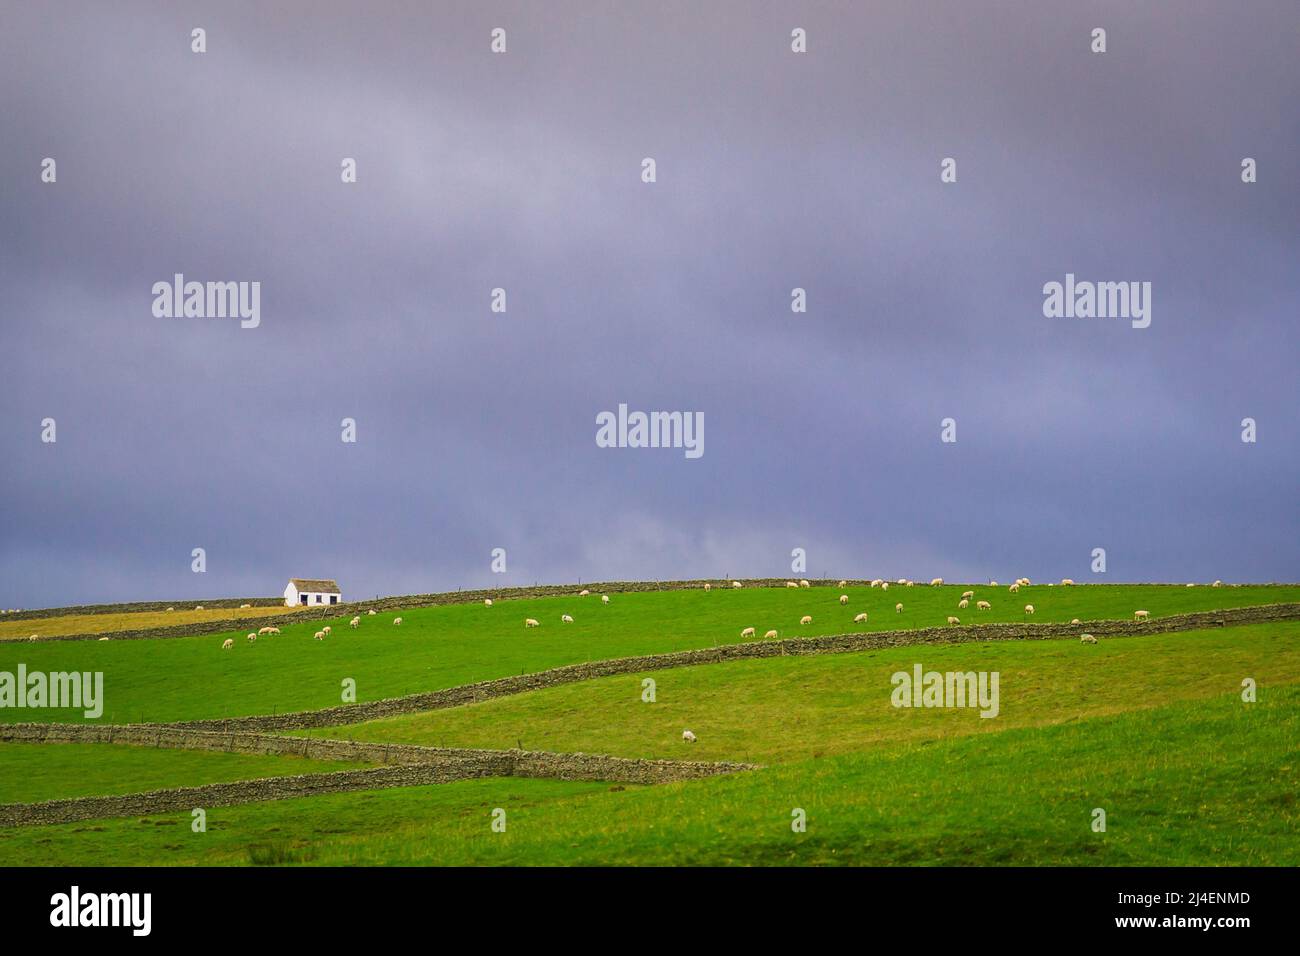 Il paesaggio delle Pennine Settentrionali in Upper Teesdale. Muri in pietra, pecore e granai sono presenti nel paesaggio. Foto Stock